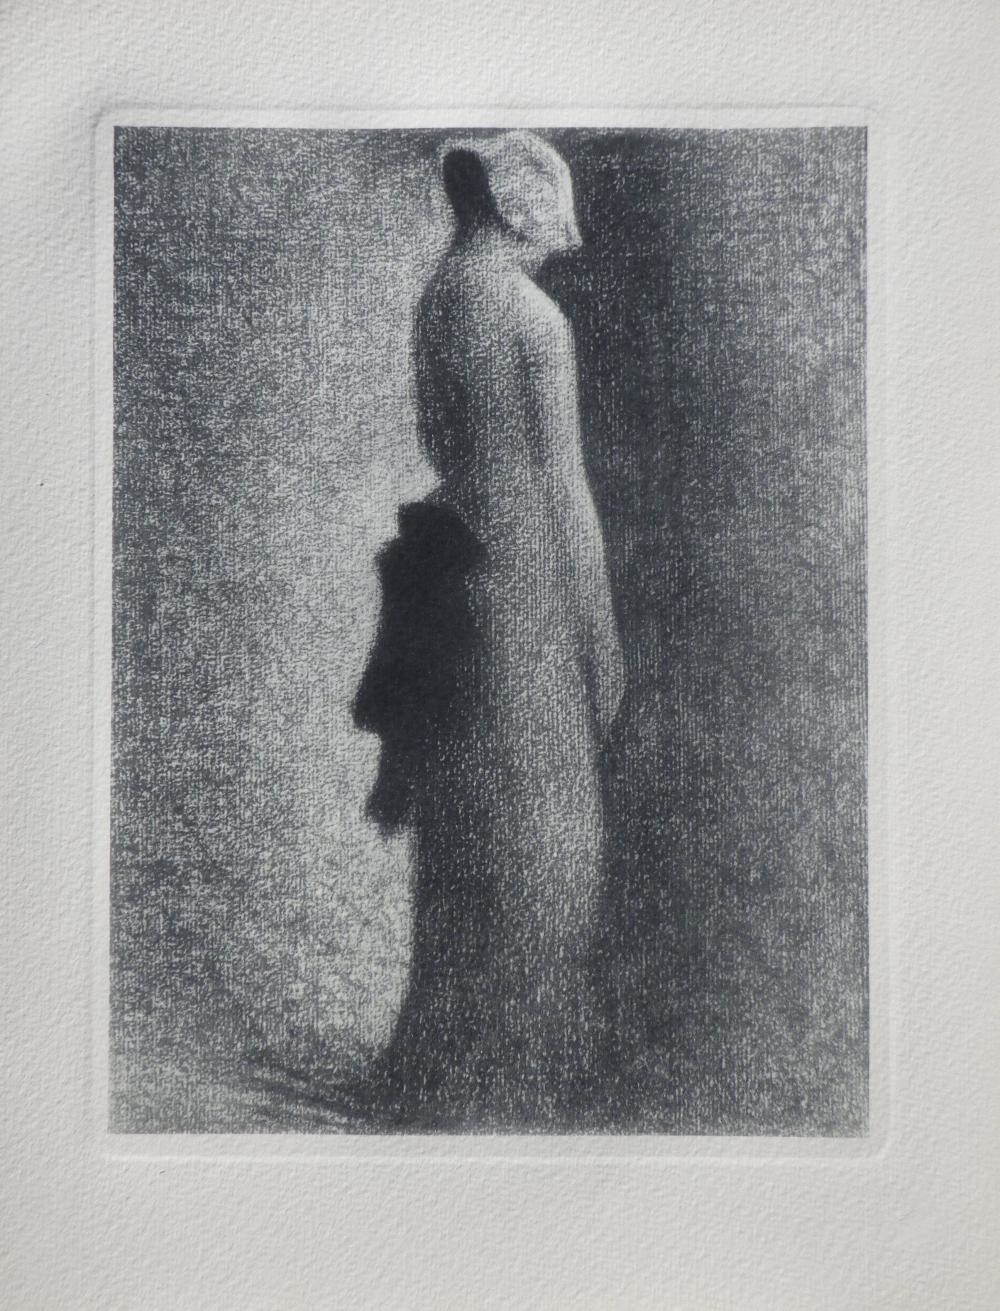 GEORGES SEURAT - FEMME AU NŒUD NOI by Georges Seurat, 1948